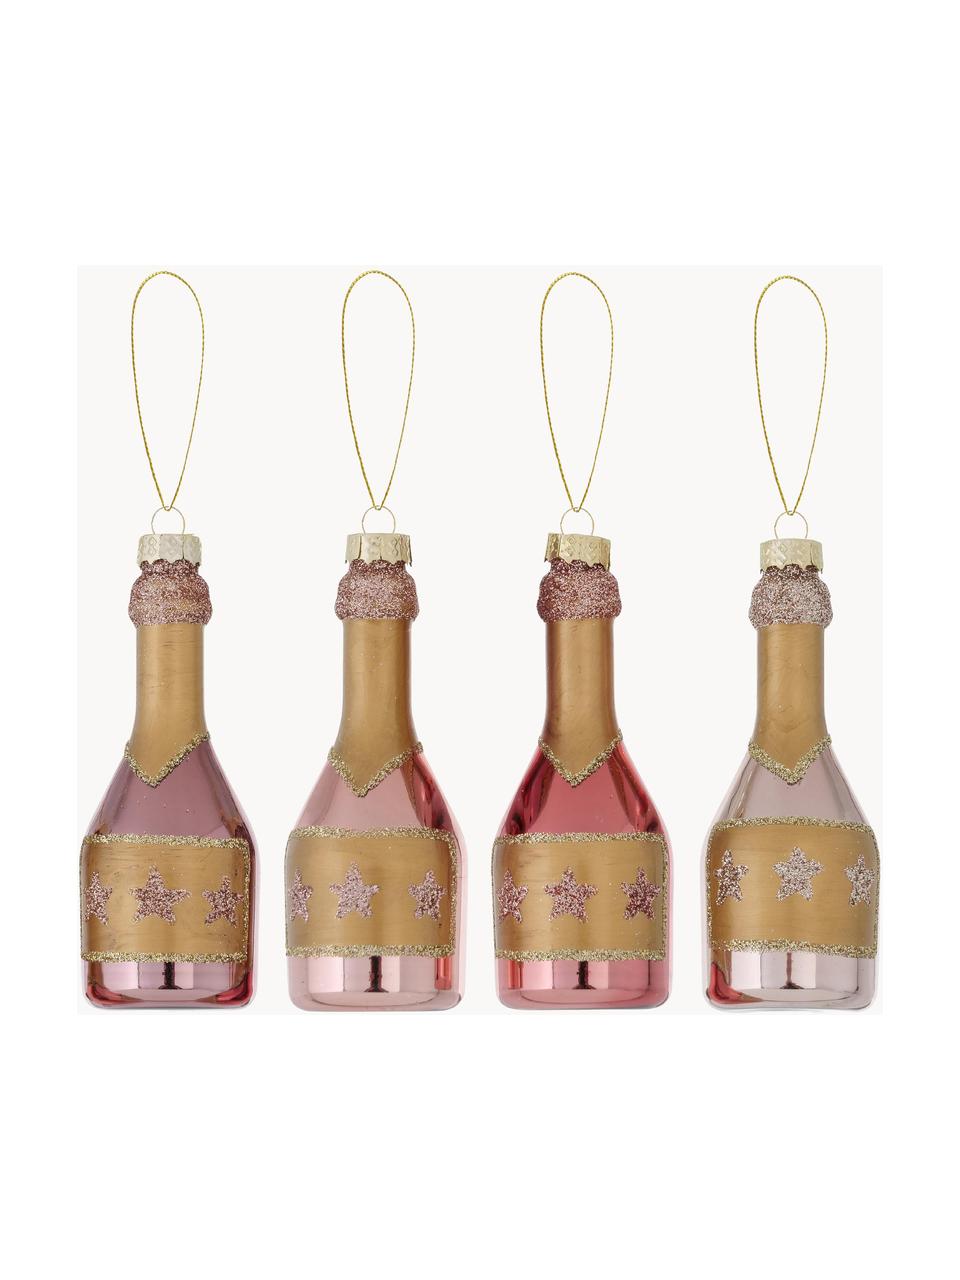 Súprava vianočných ozdôb Champagne V 10 cm, 4 diely, Bledoružová, zlatá, Ø 4 x V 10 cm